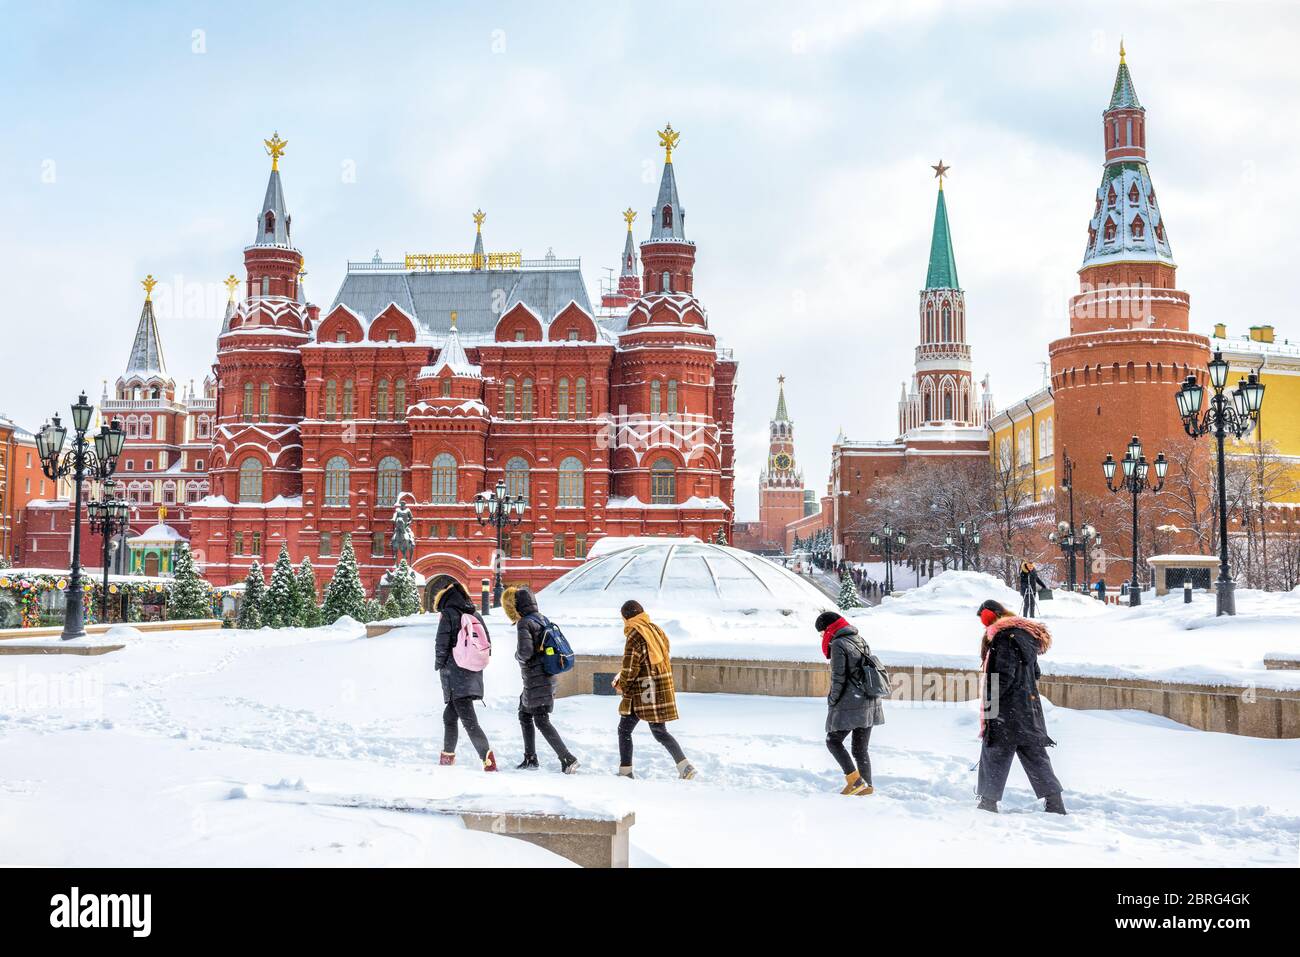 Mosca, Russia - 5 febbraio 2018: In inverno si visita la Piazza Manezhnaya vicino al Cremlino di Mosca. E' una delle principali attrazioni turistiche in Resort Foto Stock